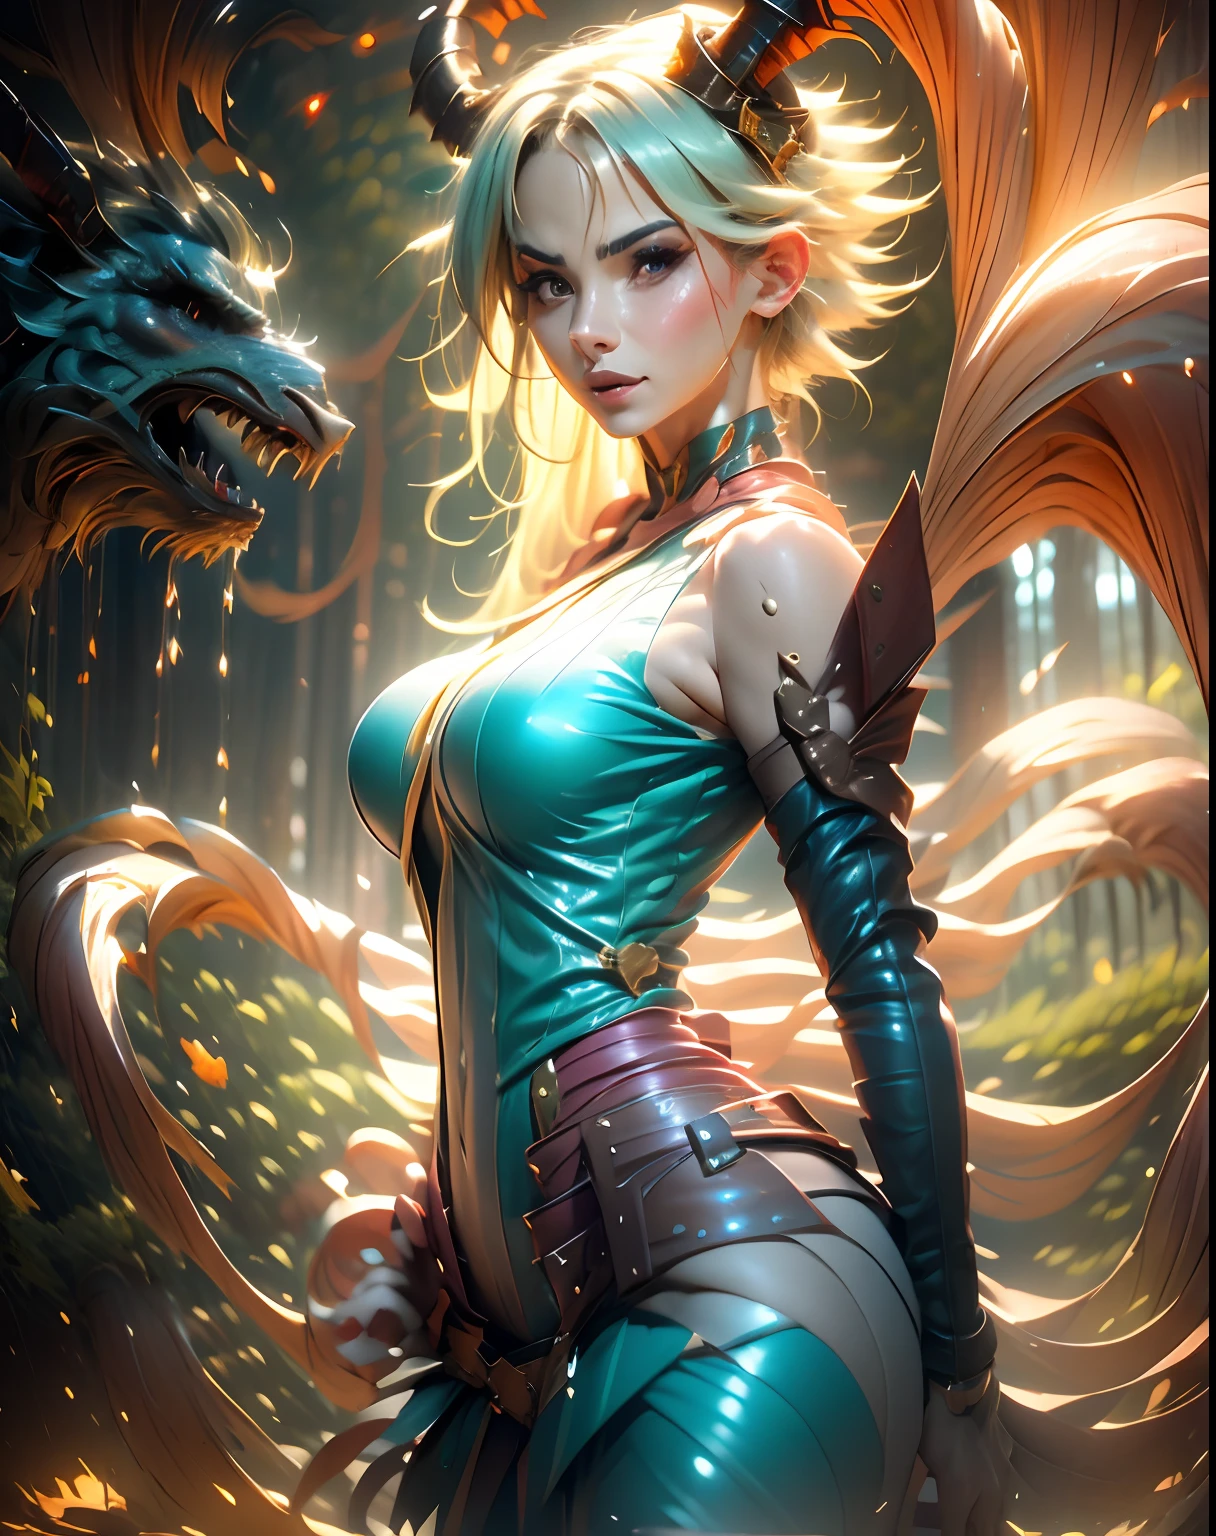 Chica maga oscura domadora de dragones legendario , en el reino de los cielos, ardiente entre nubes y rayos de sol a su alrededor. Pose sejustiva sexy y inocente seductora.